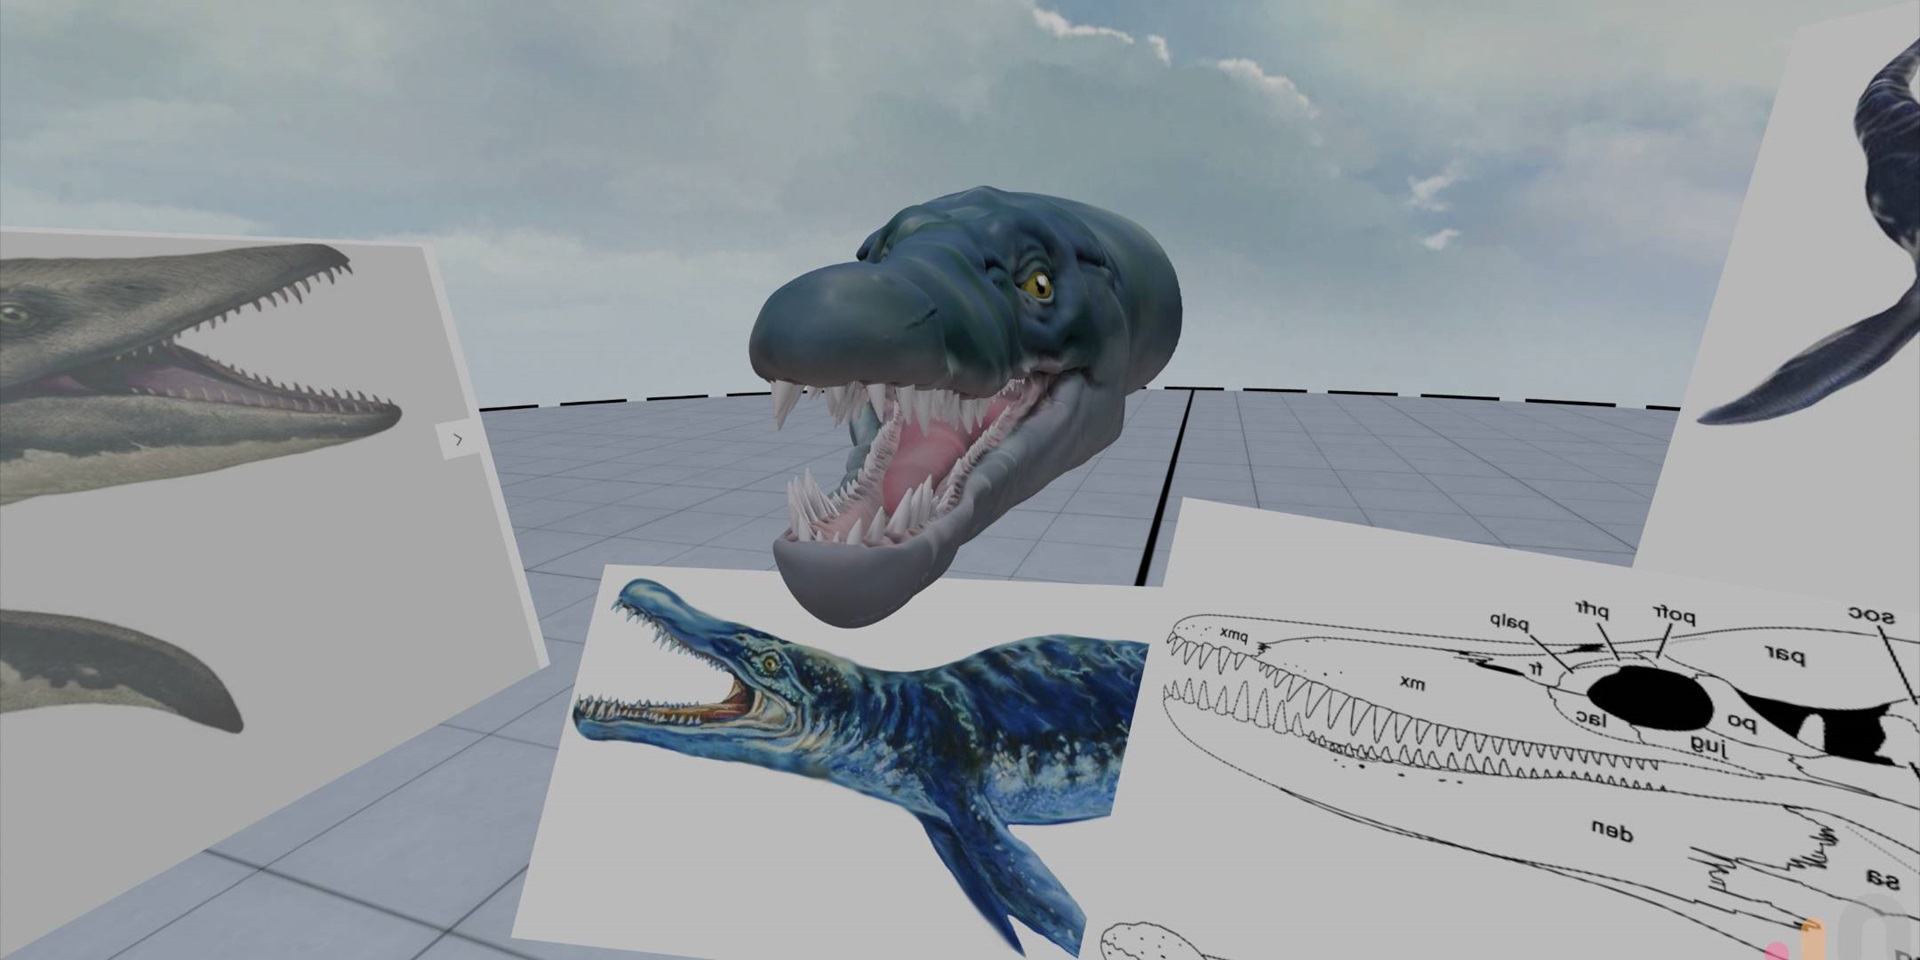 Sculpting the Kronosaurus using VR